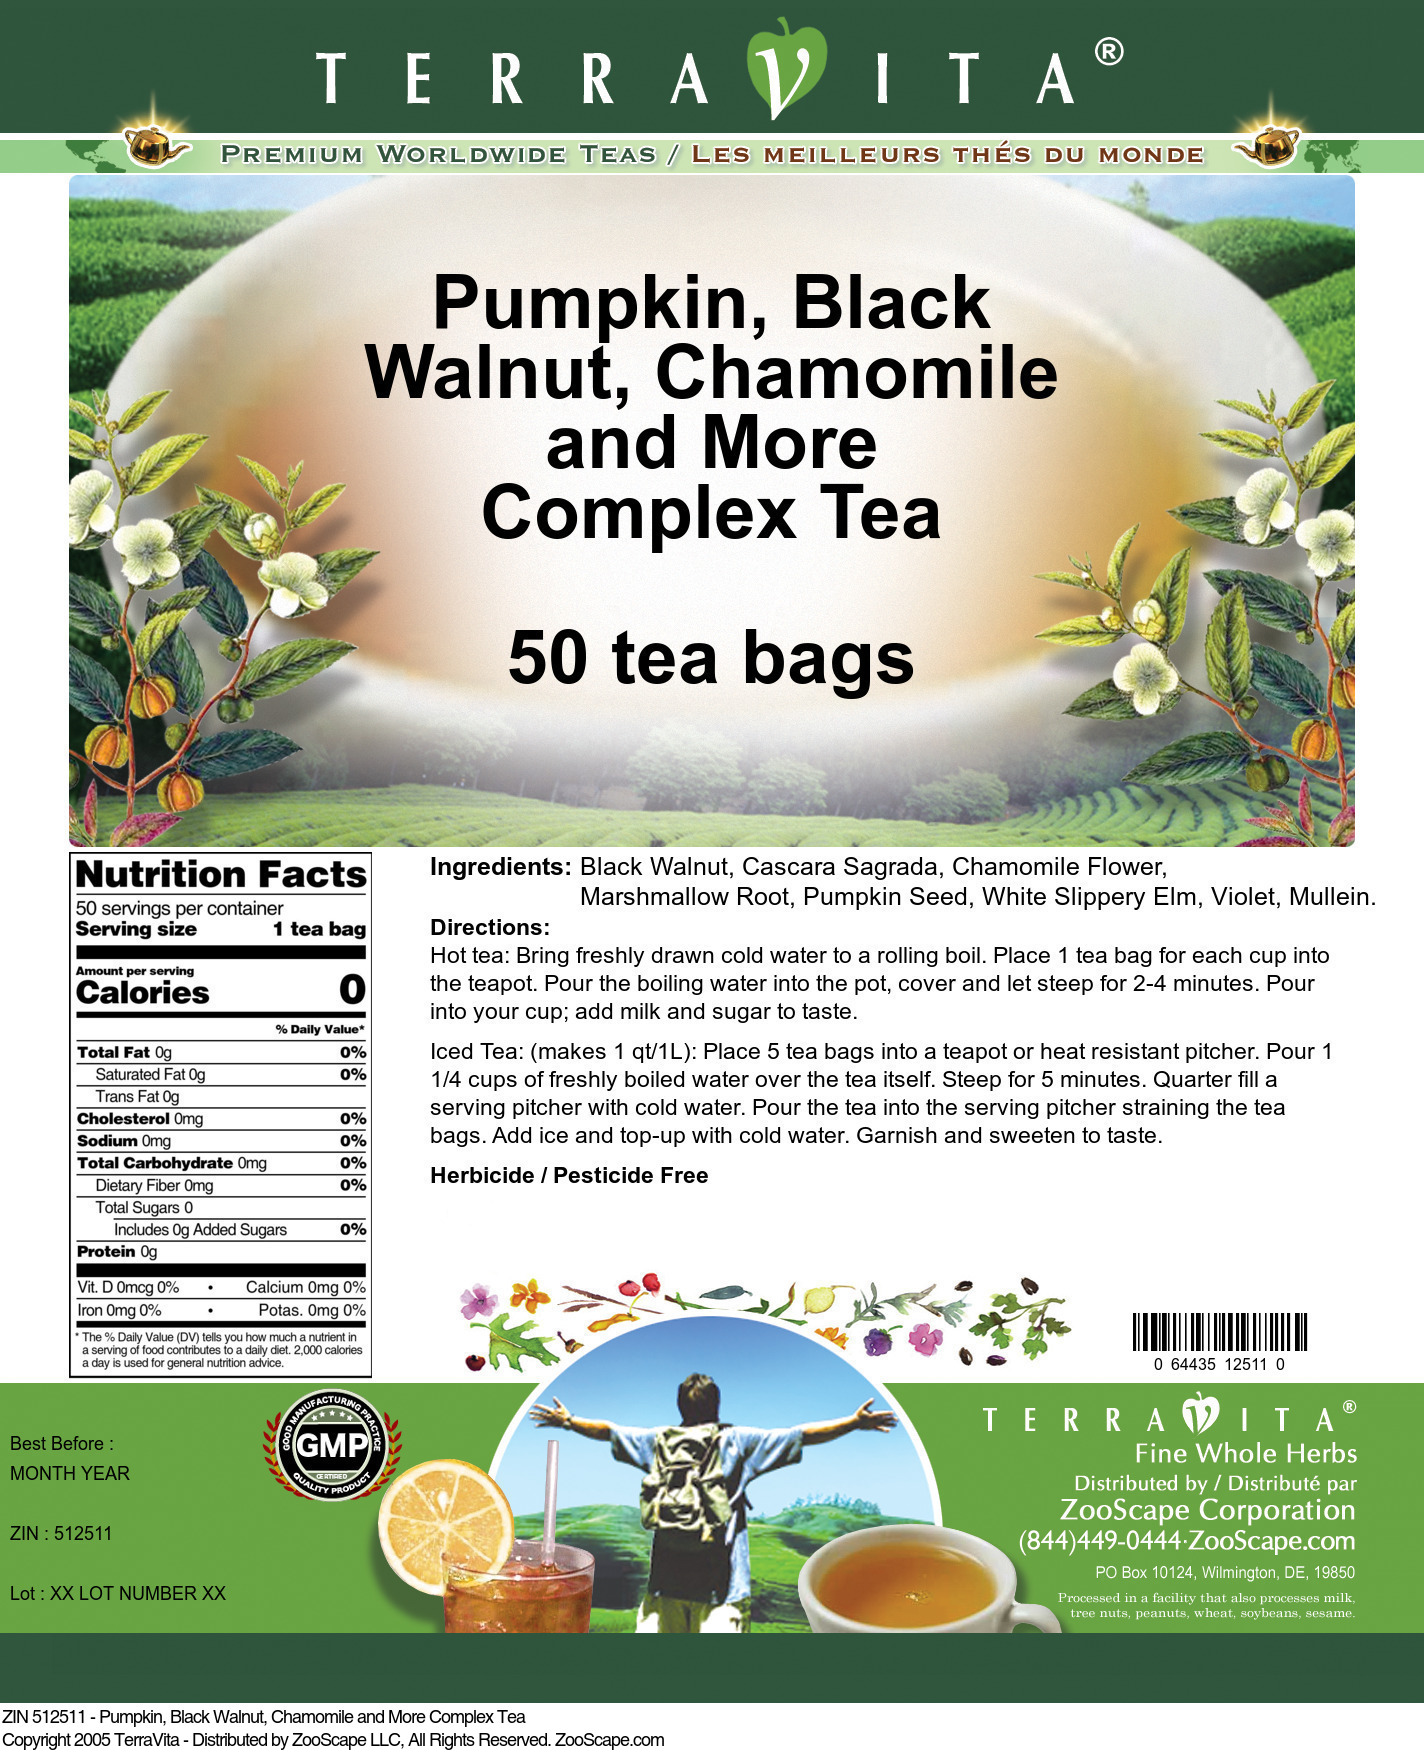 Pumpkin, Black Walnut, Chamomile and More Complex Tea - Label